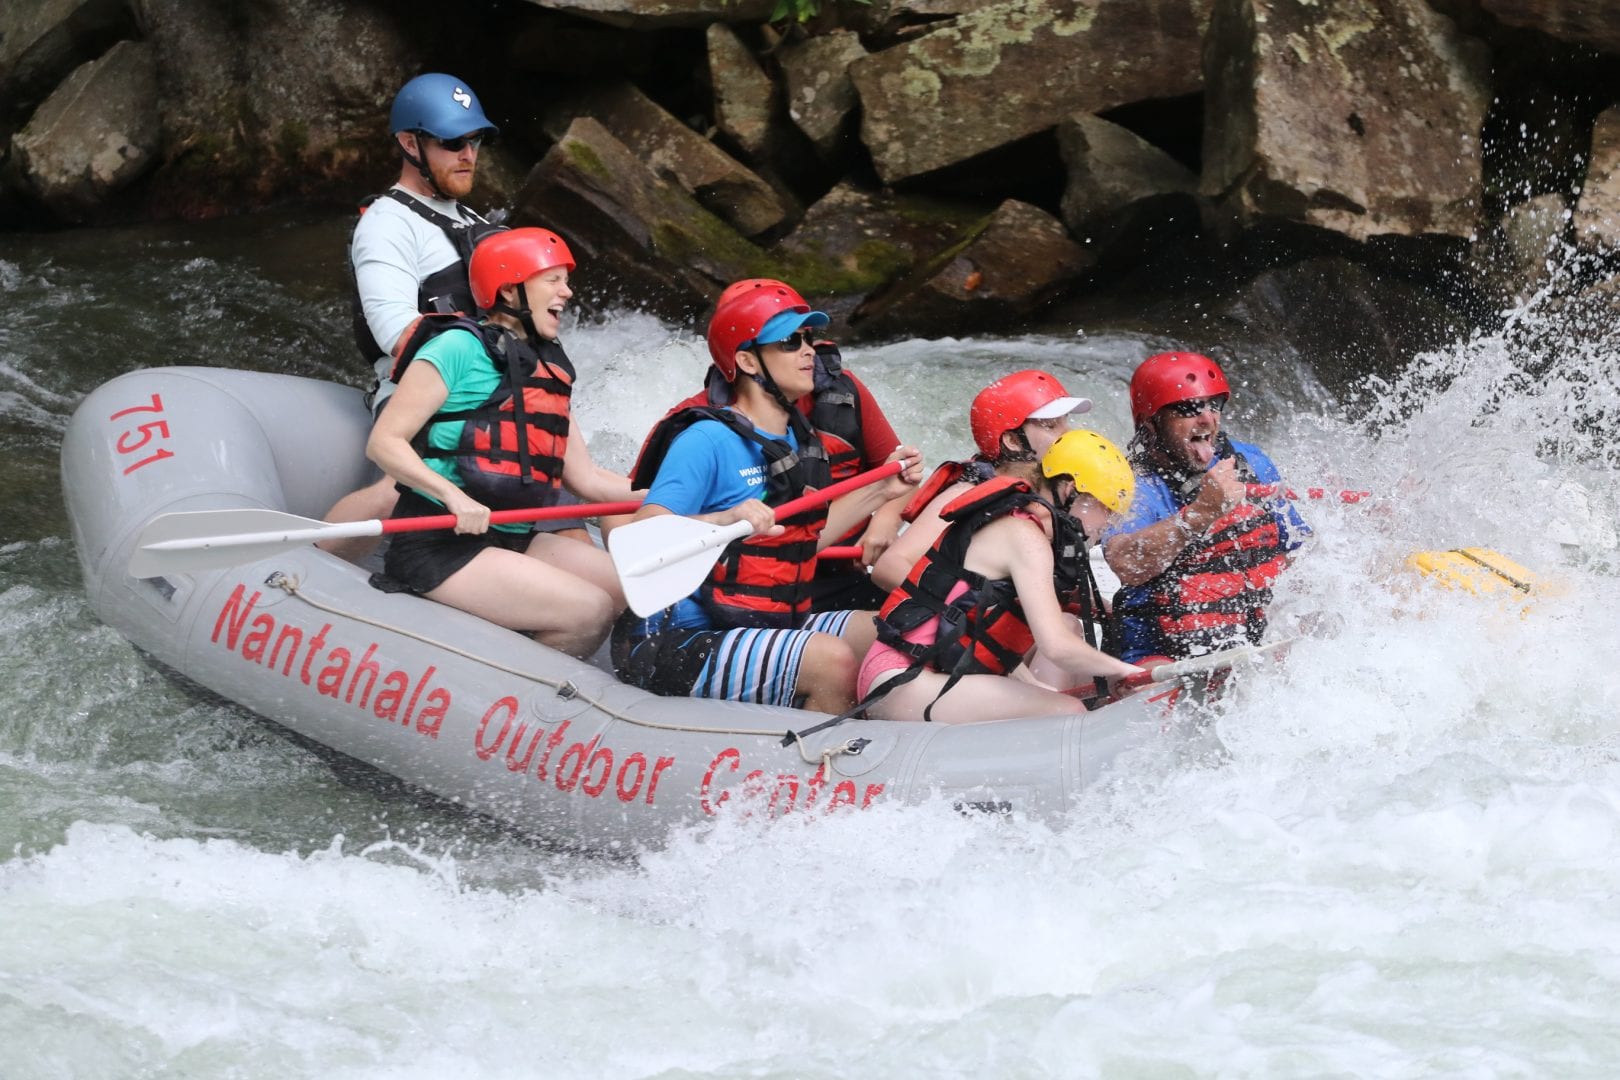 Campers enjoy navigating their raft through white water rapids